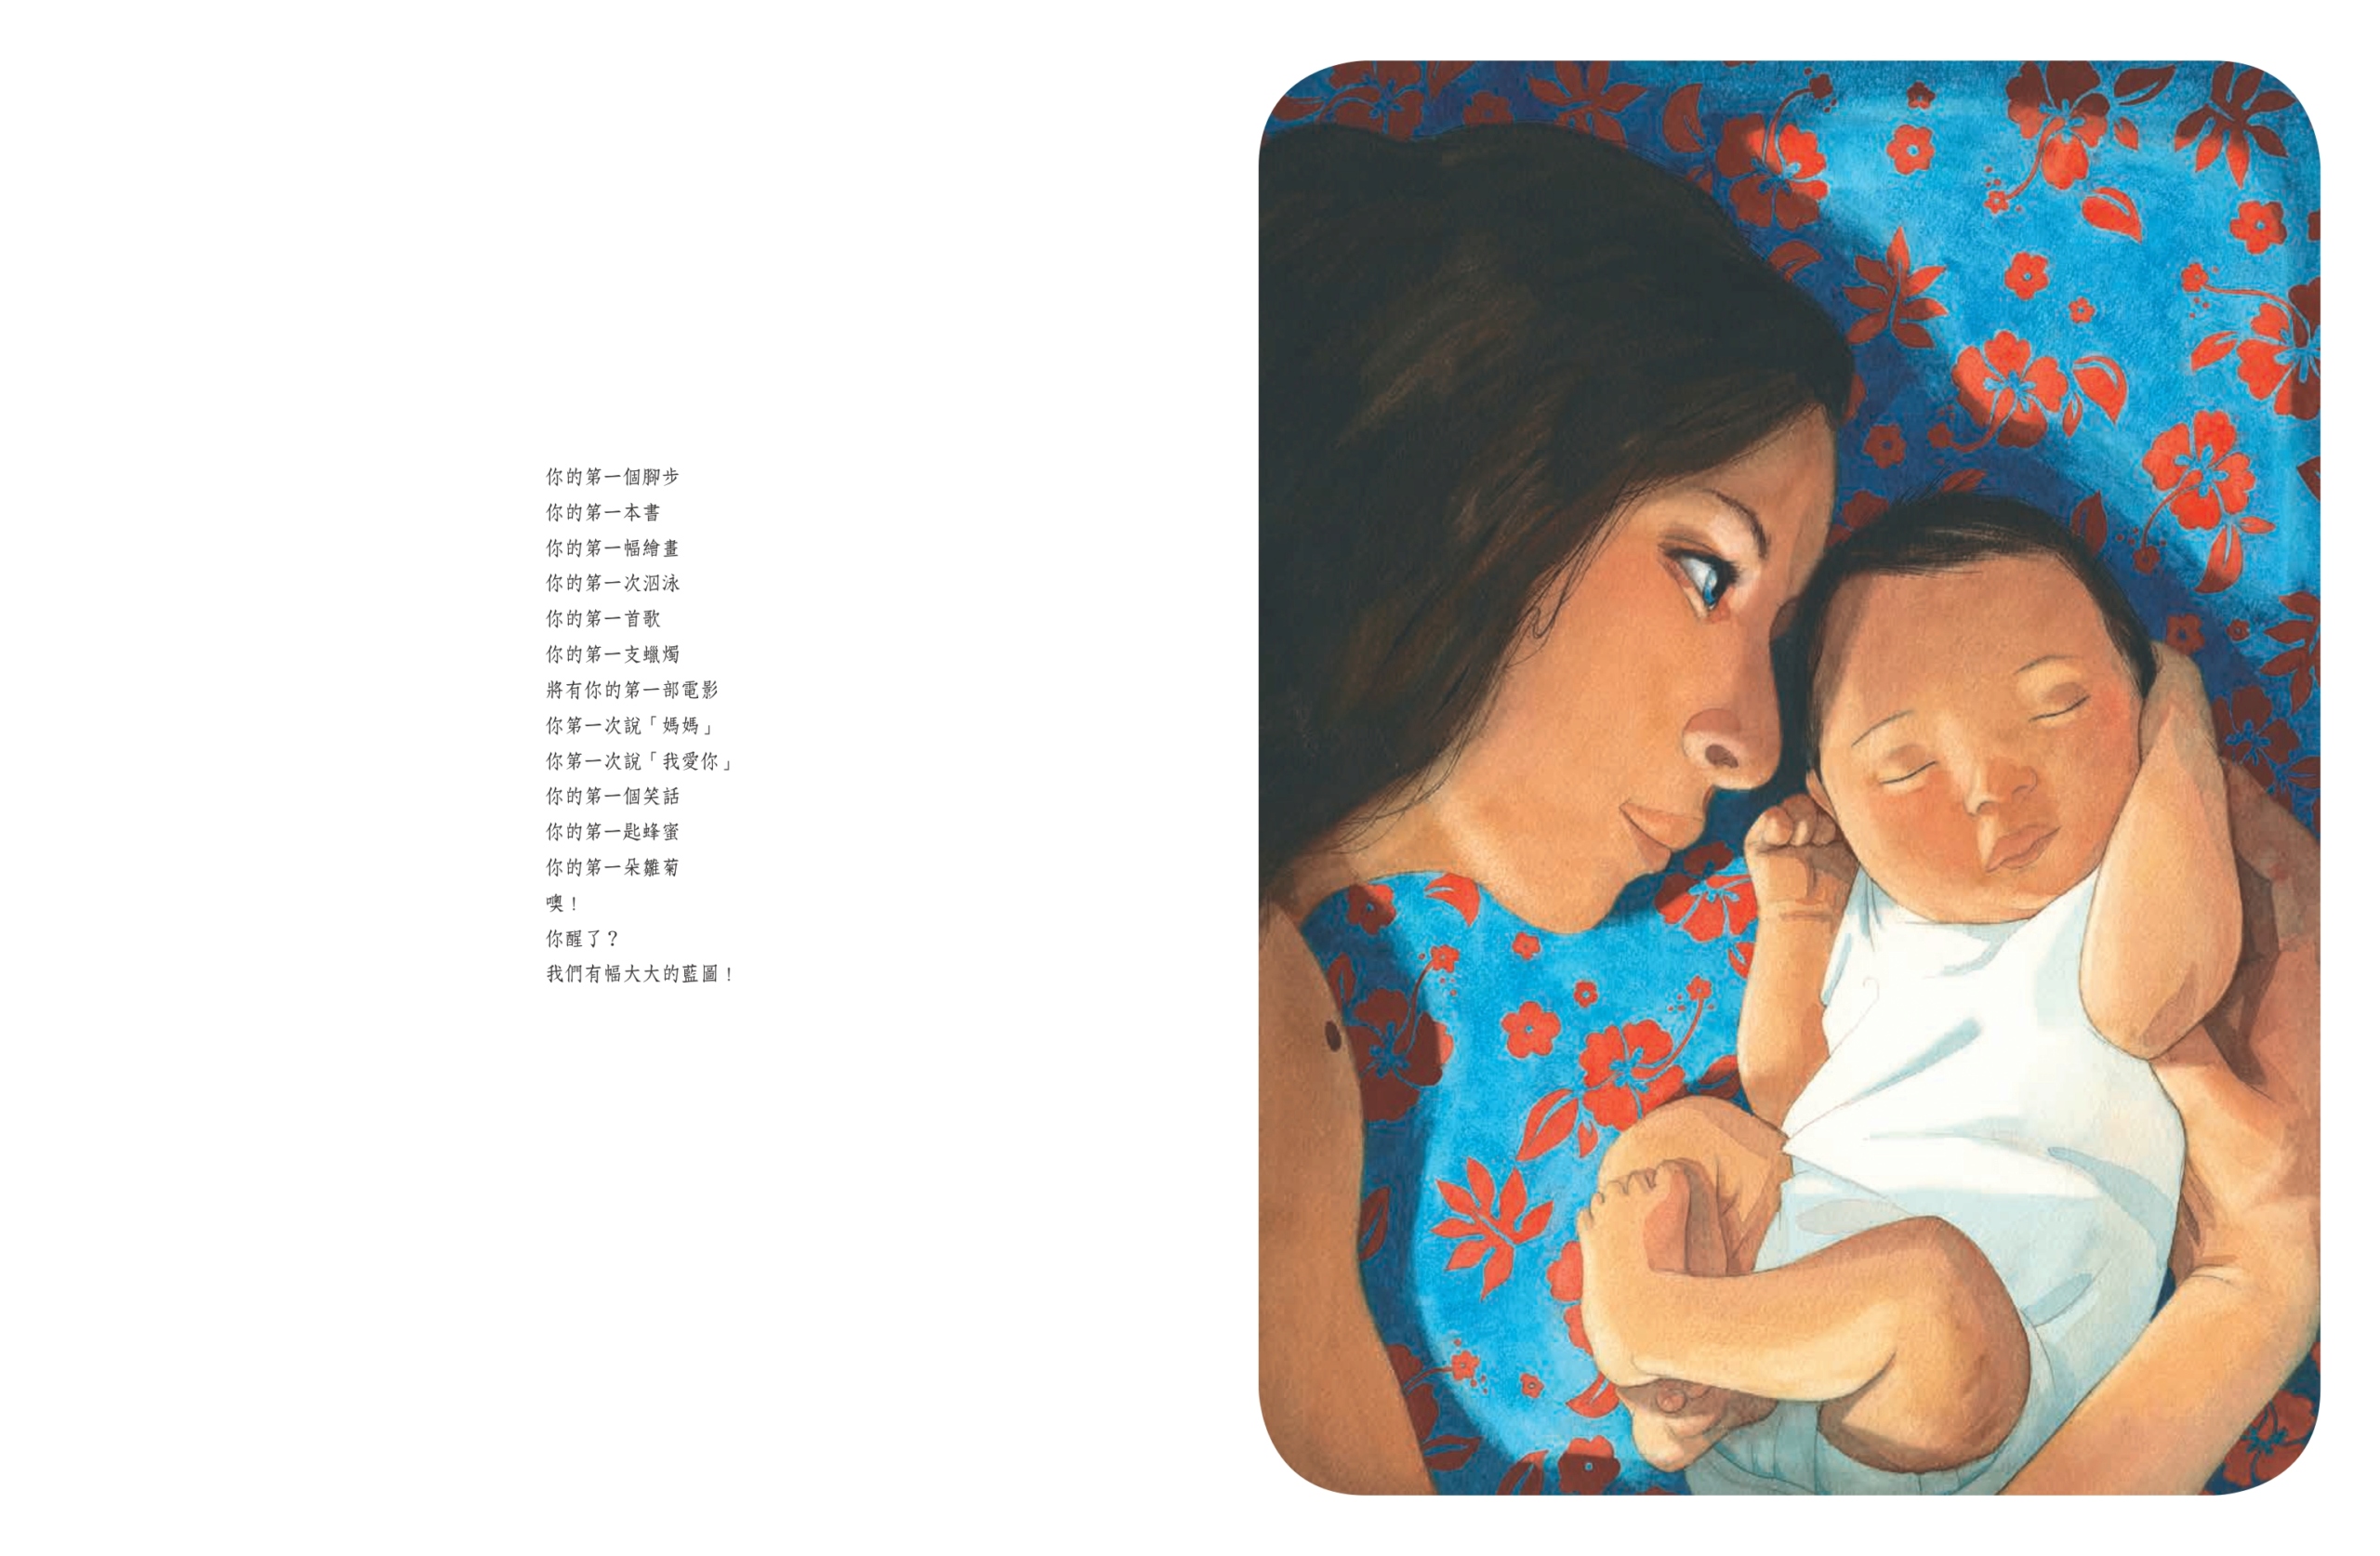 繪本 - 母親節暖心首選繪本《母親》 全球數十億人口中不同國度、不同生命階段的女性 都具有的共同身分「媽媽」 Cuioae14